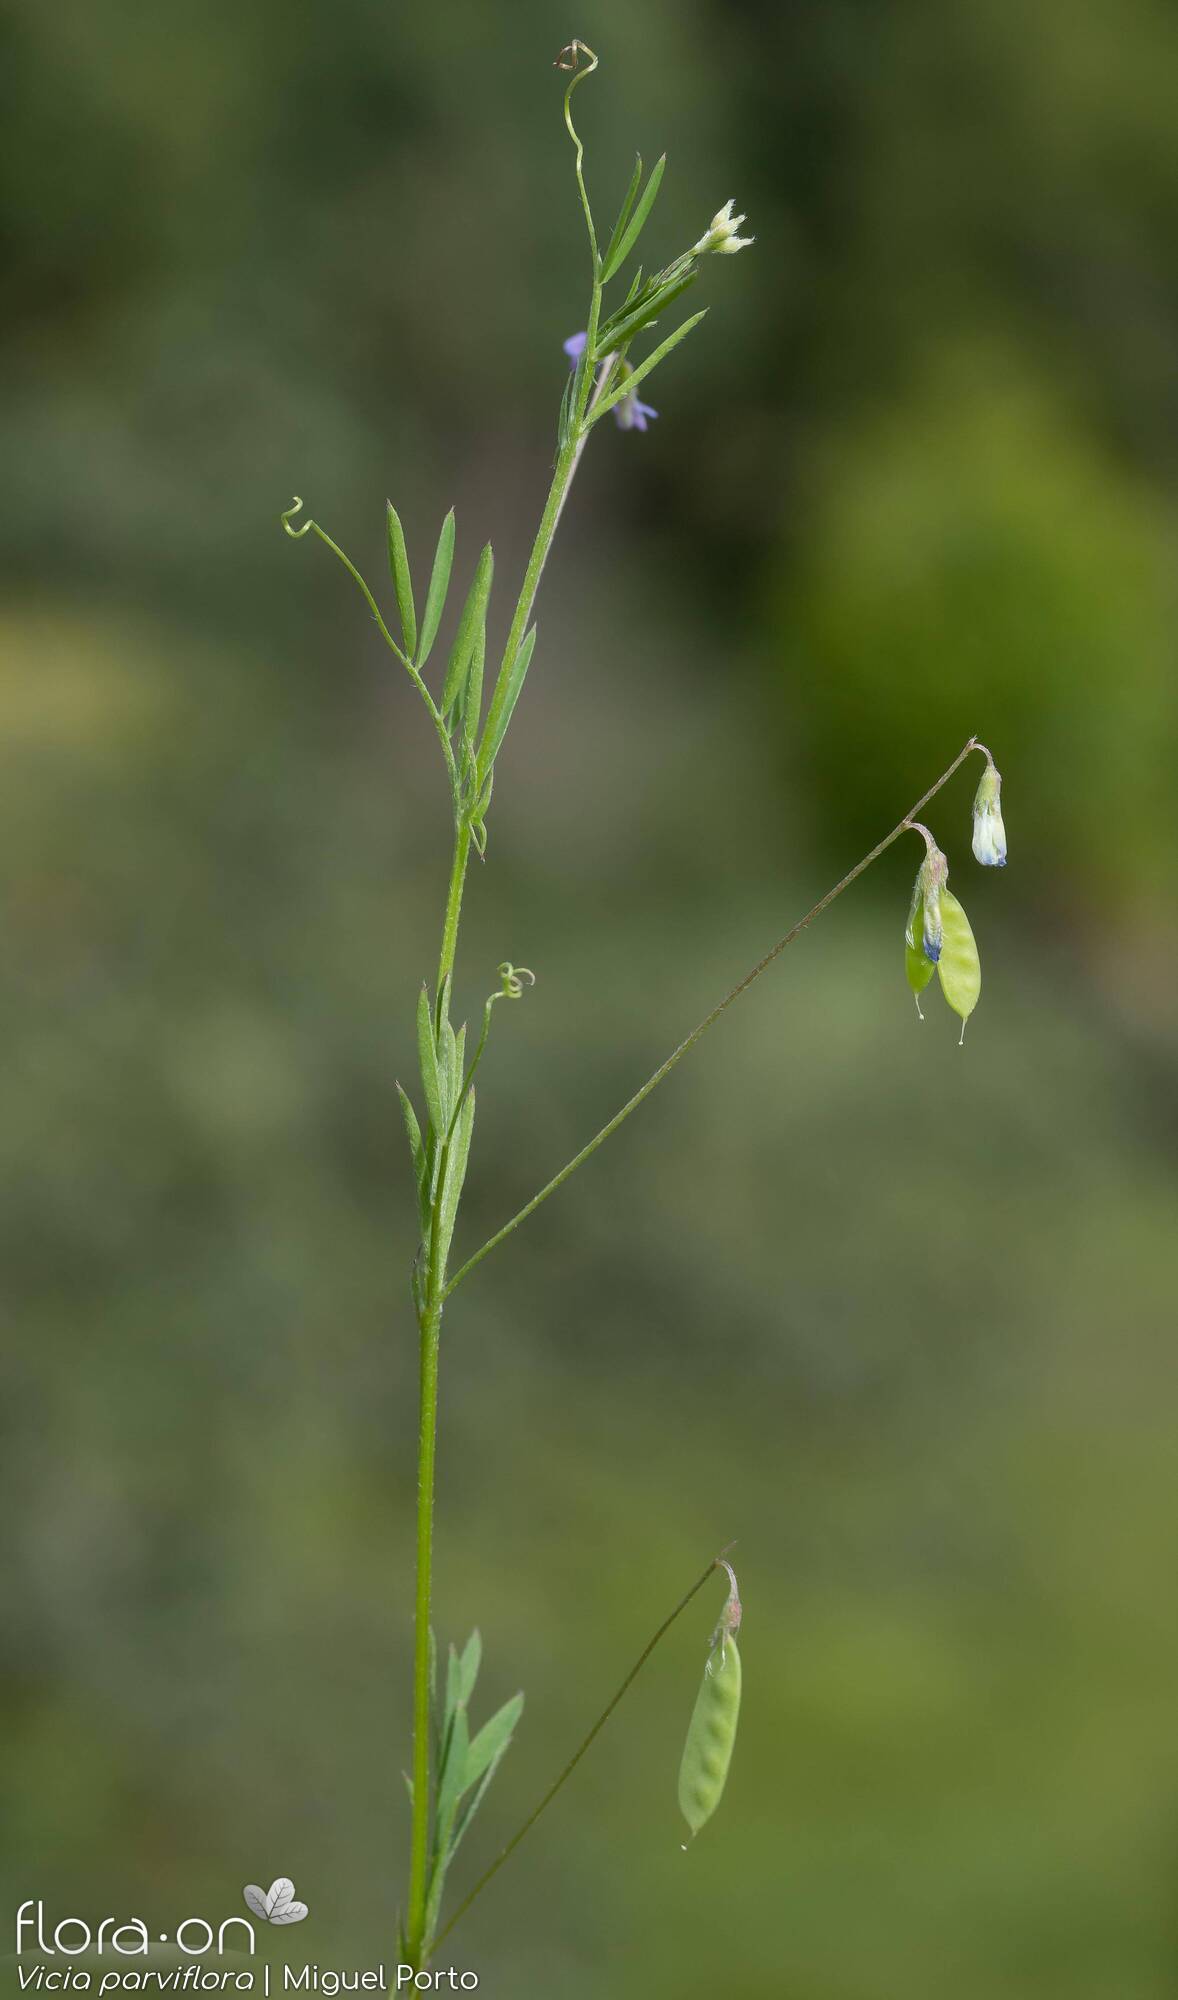 Vicia parviflora - Hábito | Miguel Porto; CC BY-NC 4.0